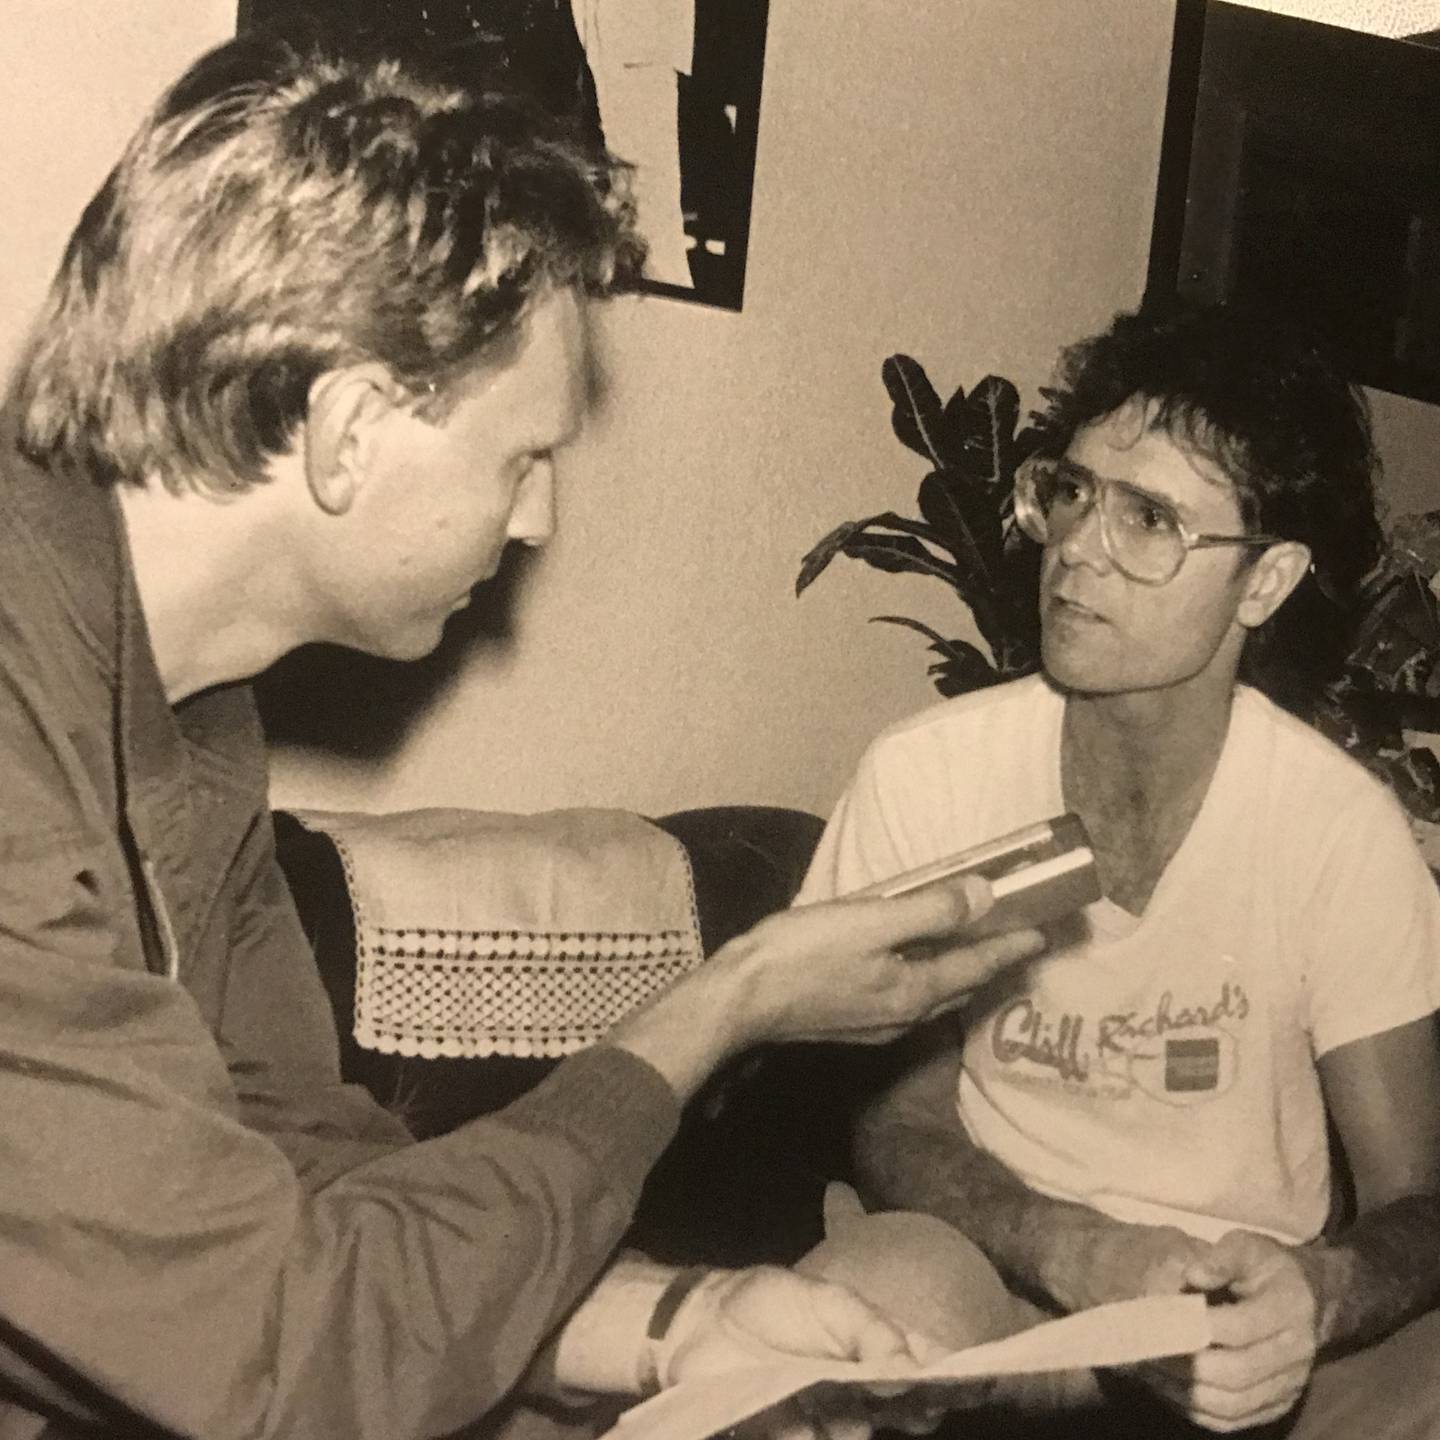 Jeg skalv på hånda da jeg intervjuet mitt store barndomsidol Cliff Richard i garderoben til Dominion Theater i London i 1987. Han fortalte meg blant annet hvorfor hadde tatt et kristent standpunkt, som den første store superstjernen i Europa.